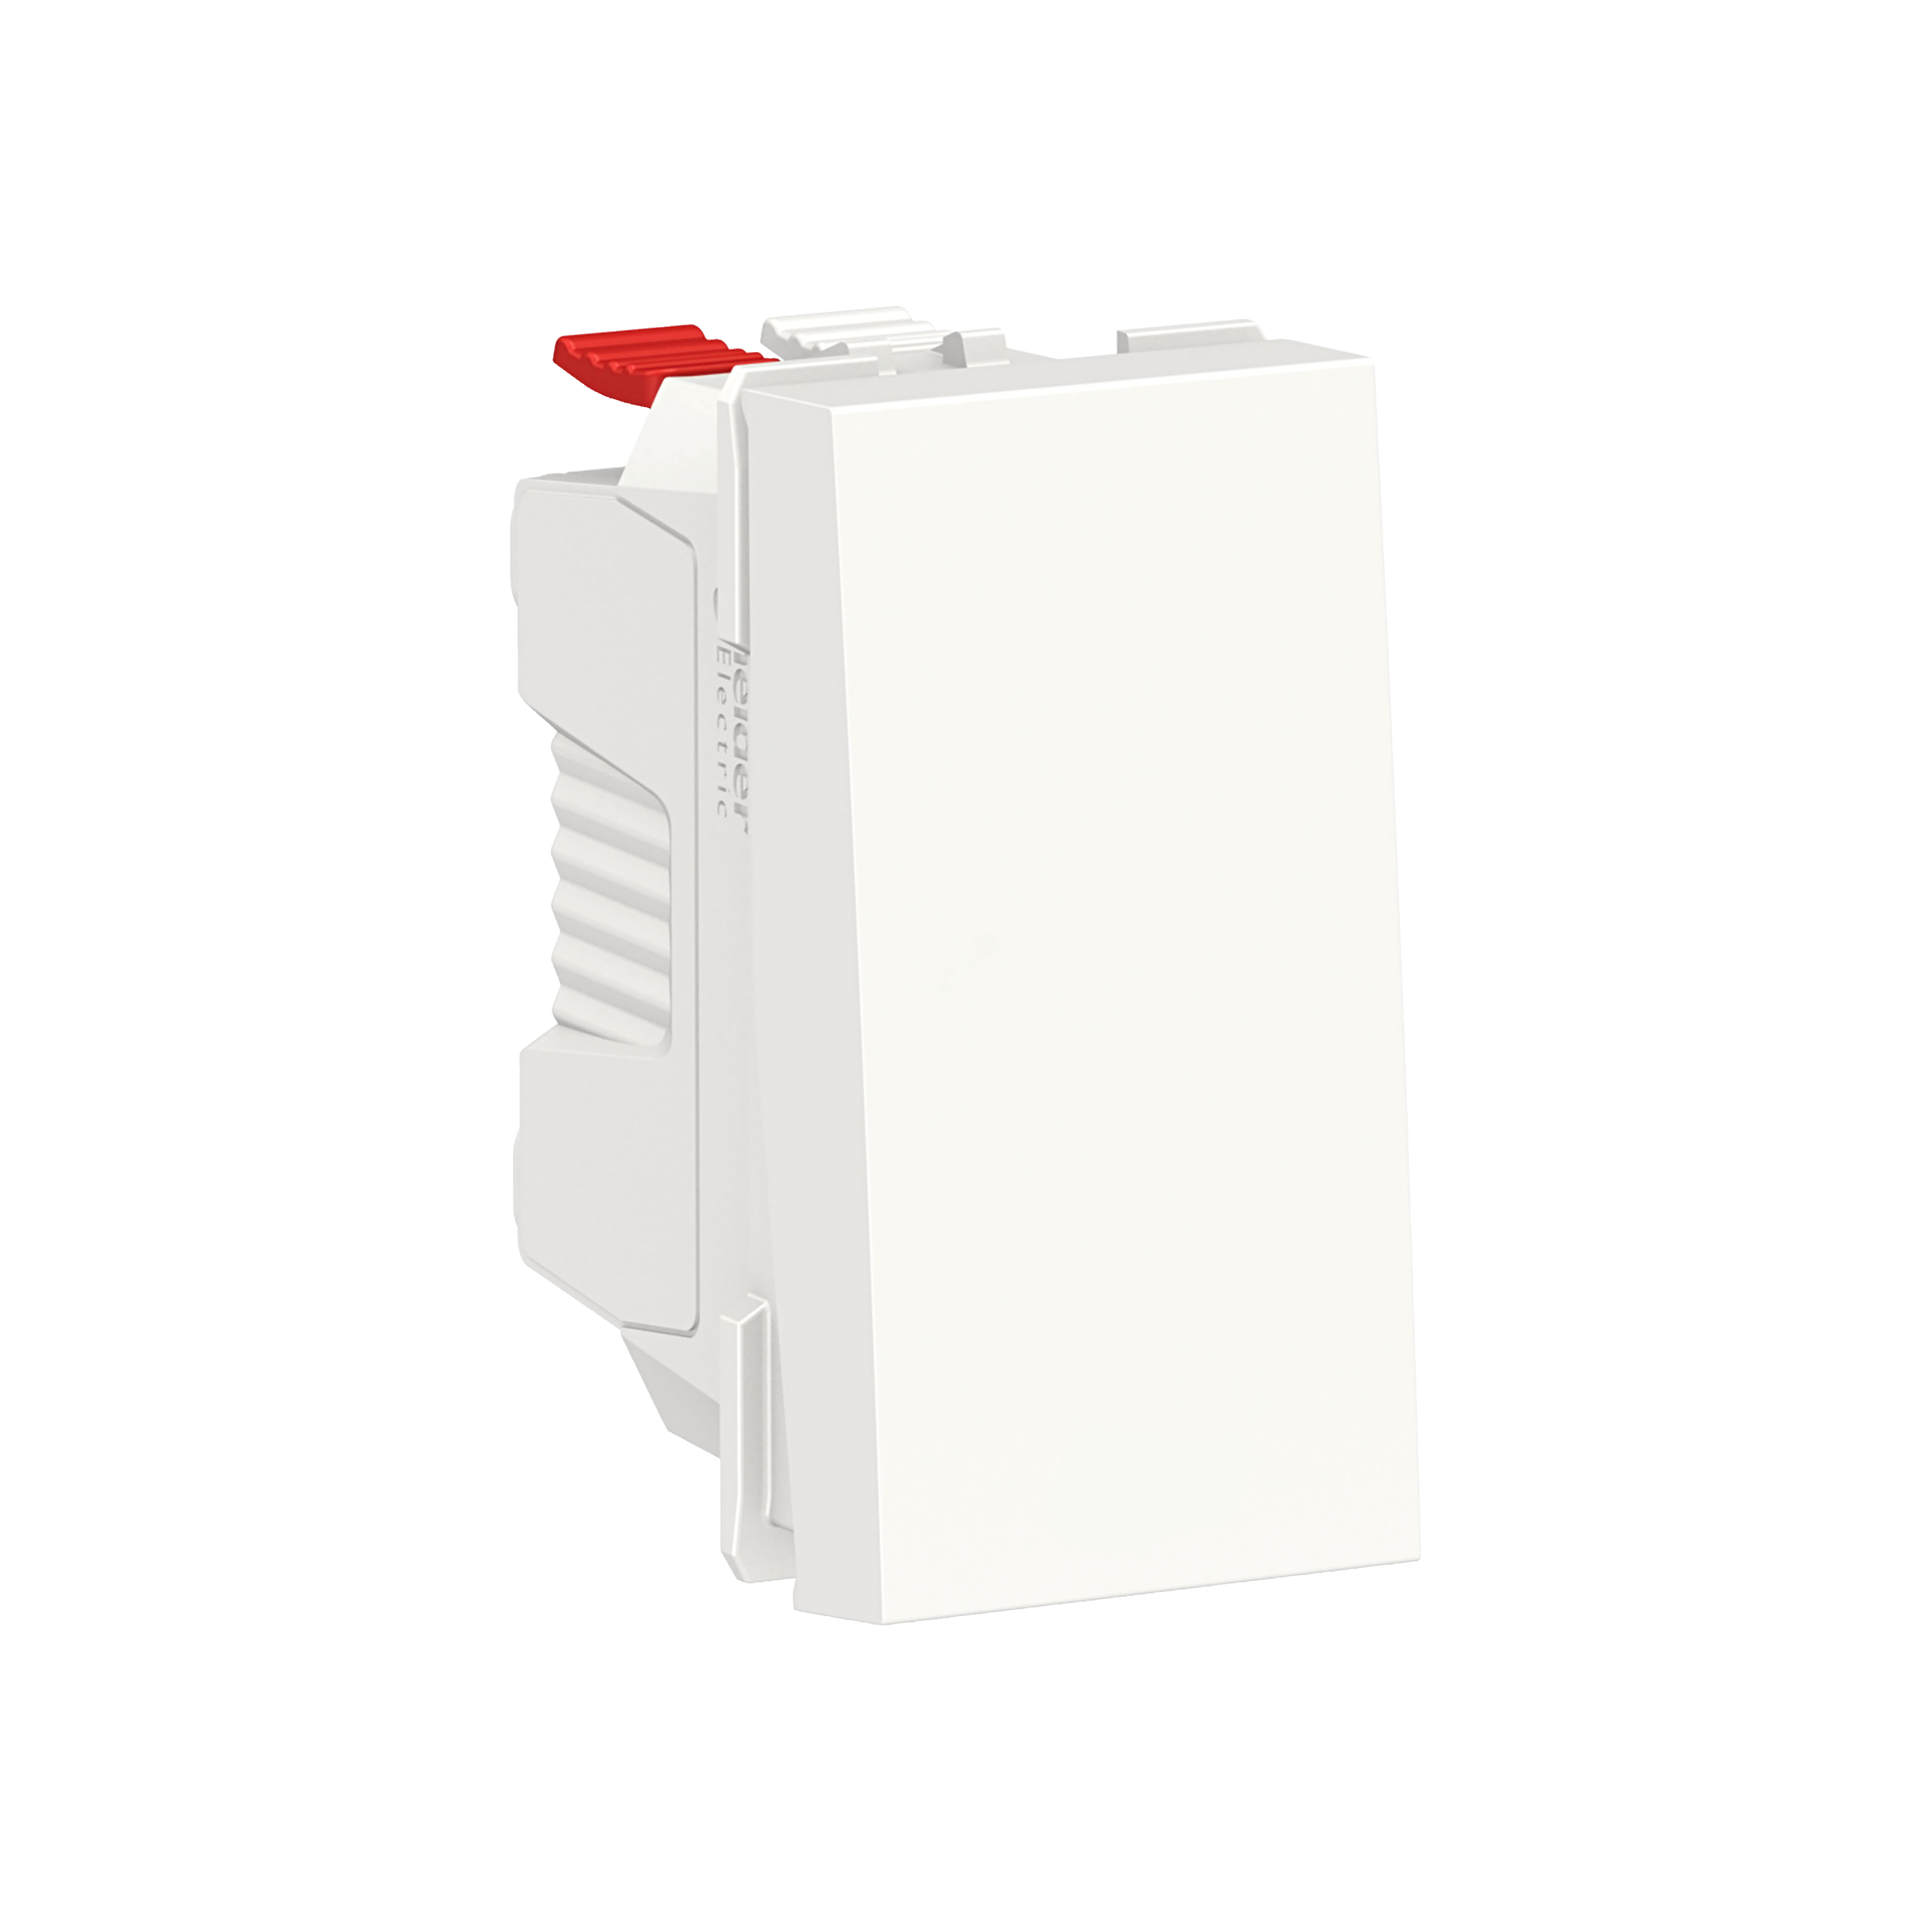 Выключатель UNICA MODULAR одноклавишный кнопочный схема 1 10 A 1 модуль белый NU310618 Schneider Electric - превью 2